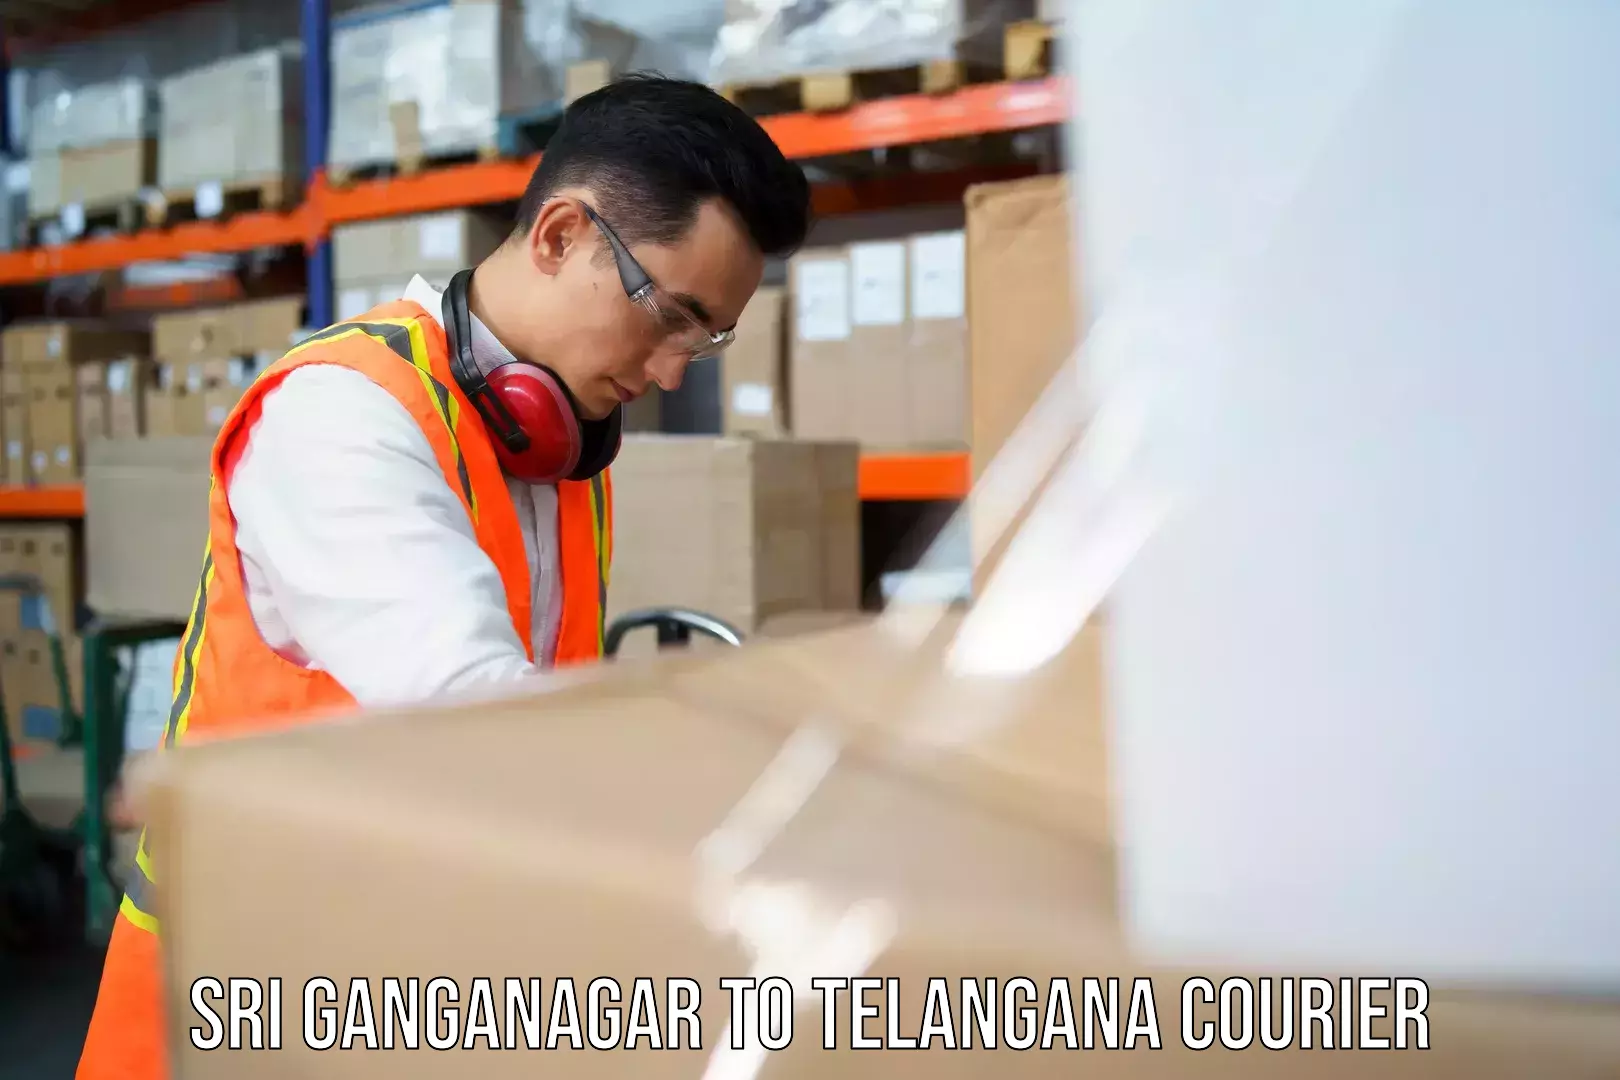 Business courier solutions Sri Ganganagar to Nalgonda